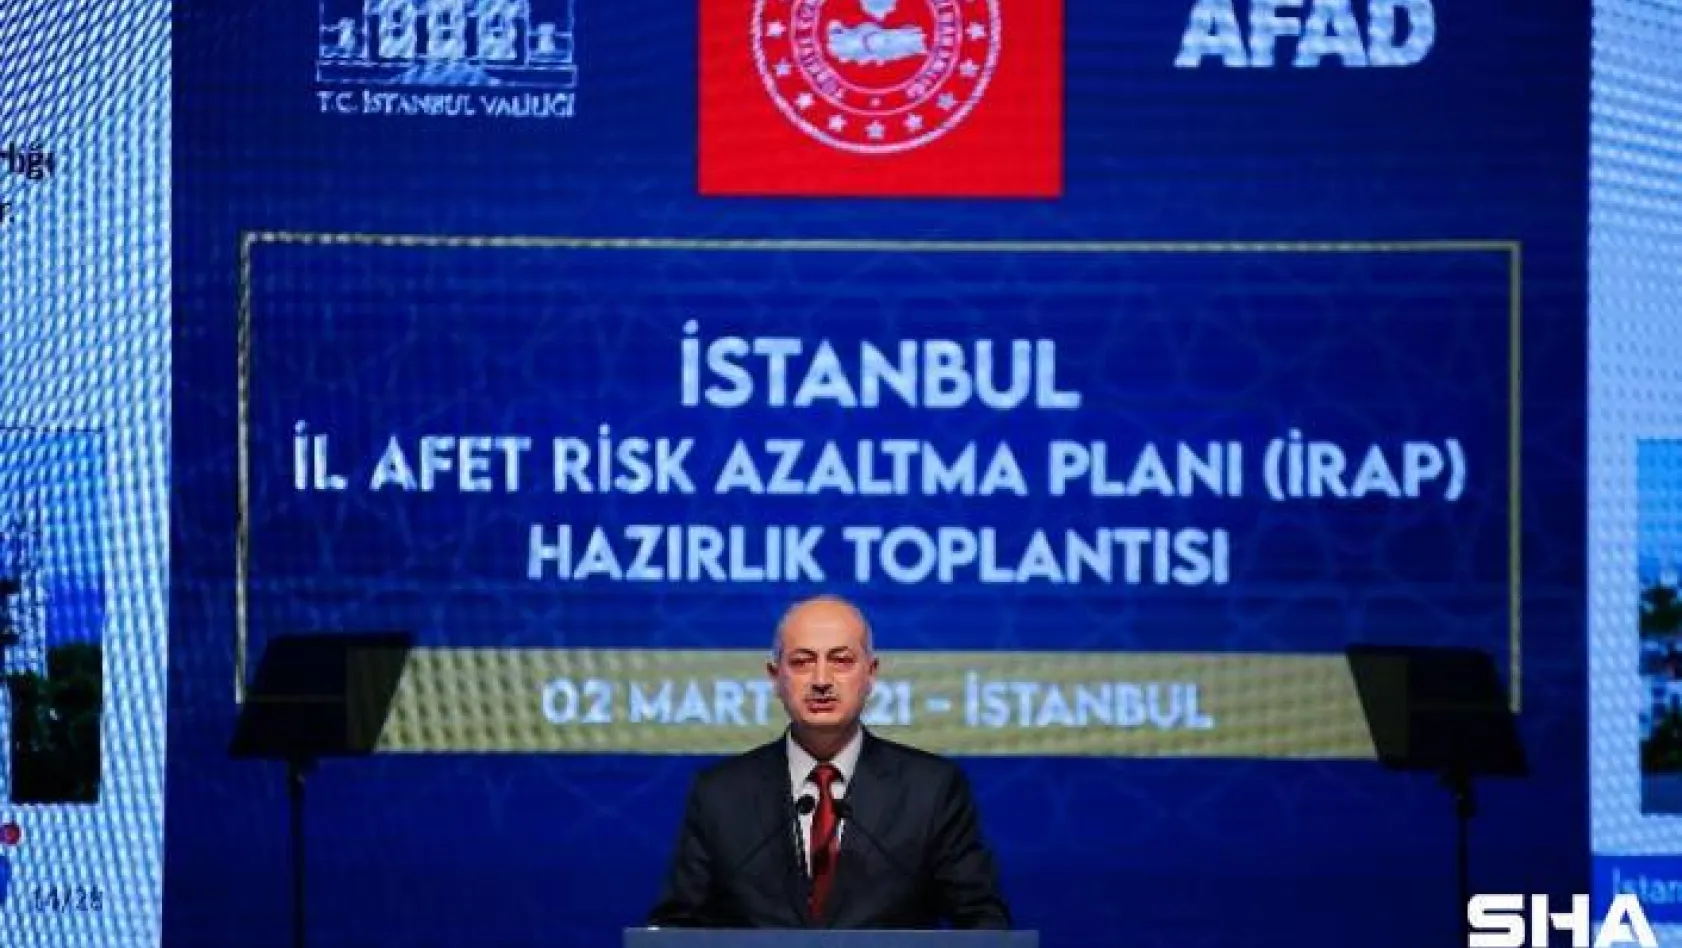 'İstanbul İl Afet Risk Azaltma Planı' hazırlık toplantısı düzenlendi